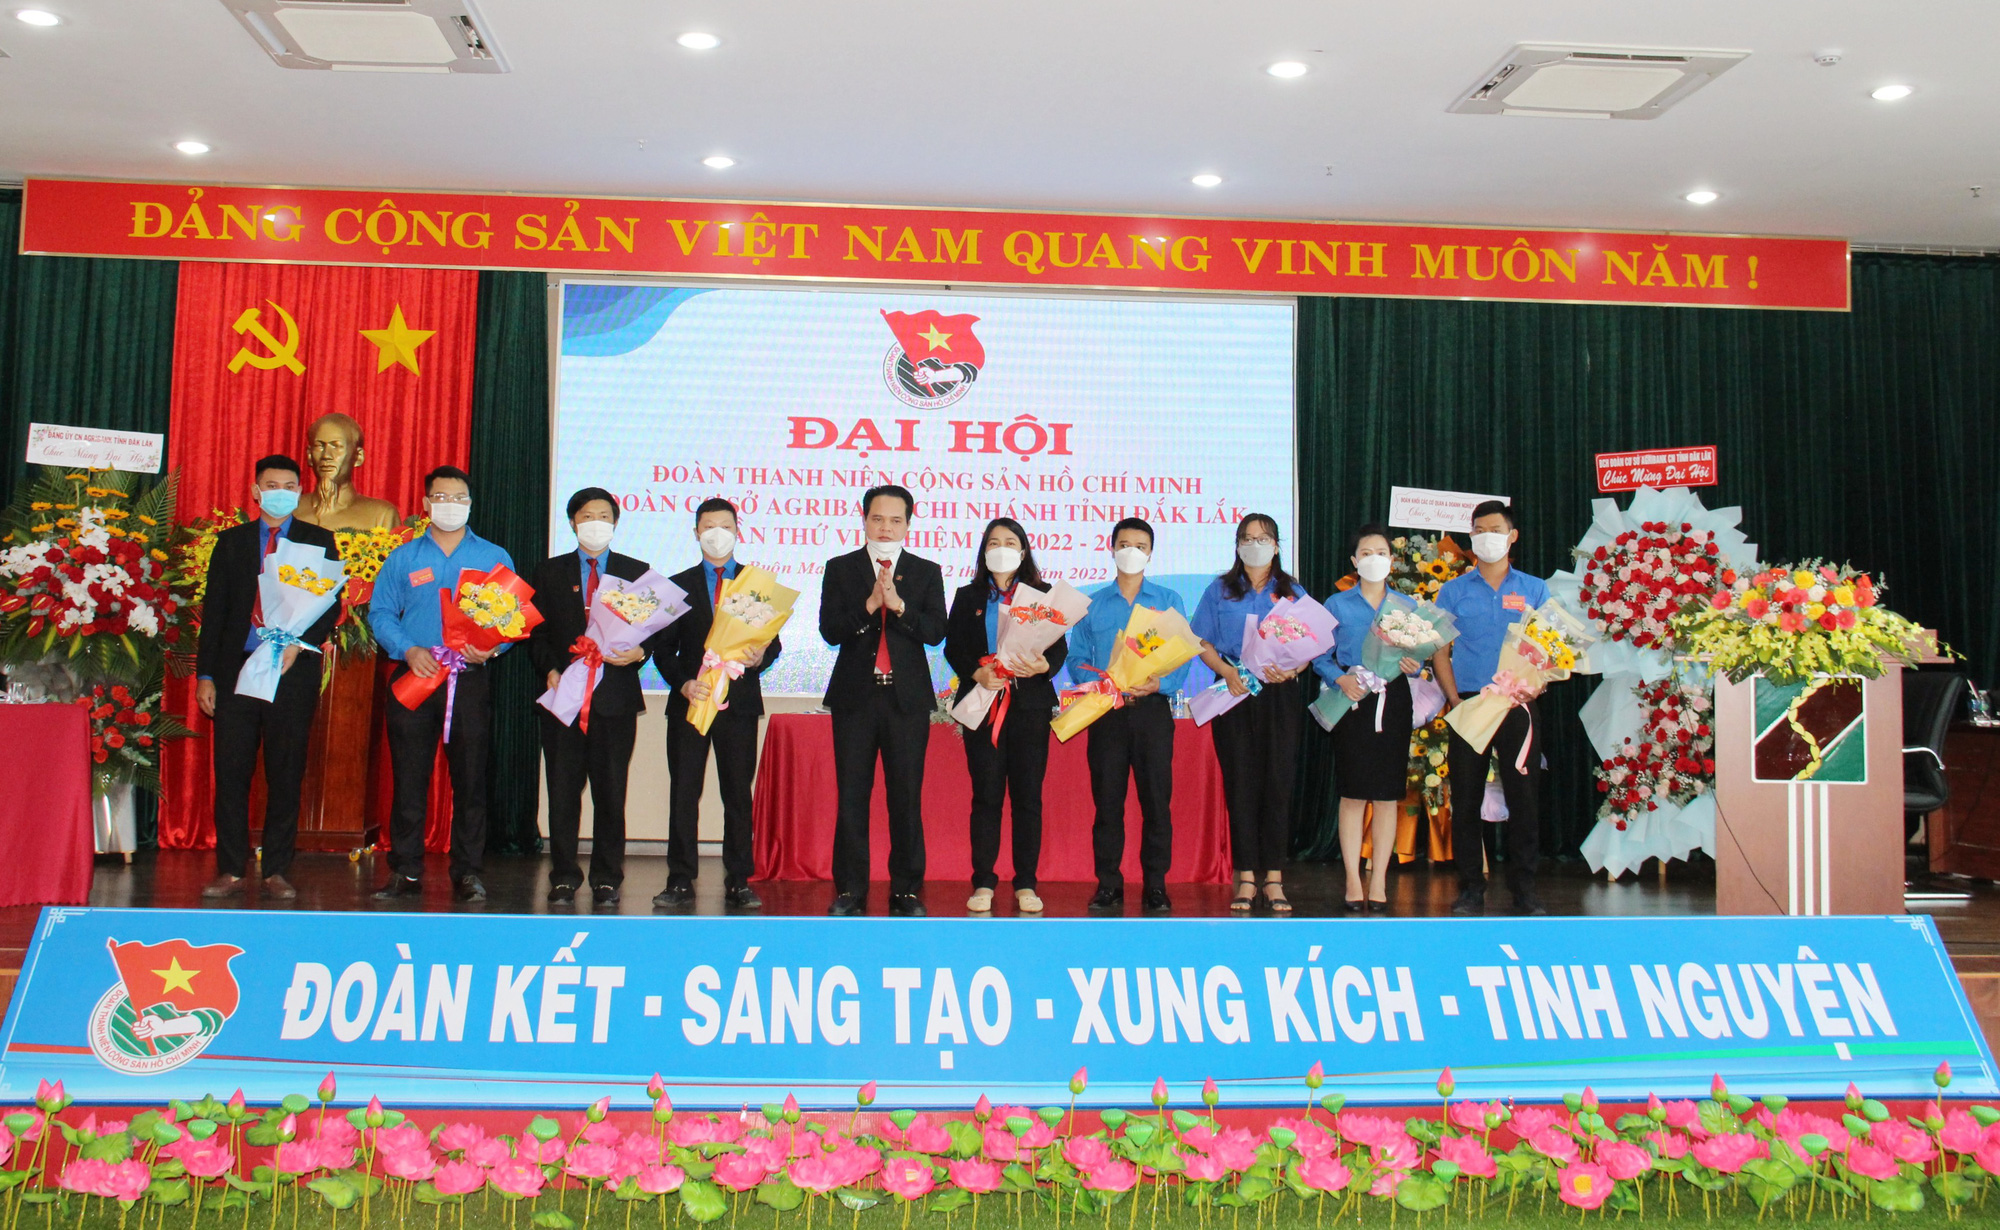 Đoàn cơ sở Agribank chi nhánh tỉnh Đắk Lắk tổ chức Đại hội lần thứ VII, nhiệm kỳ 2022 - 2027 - Ảnh 3.